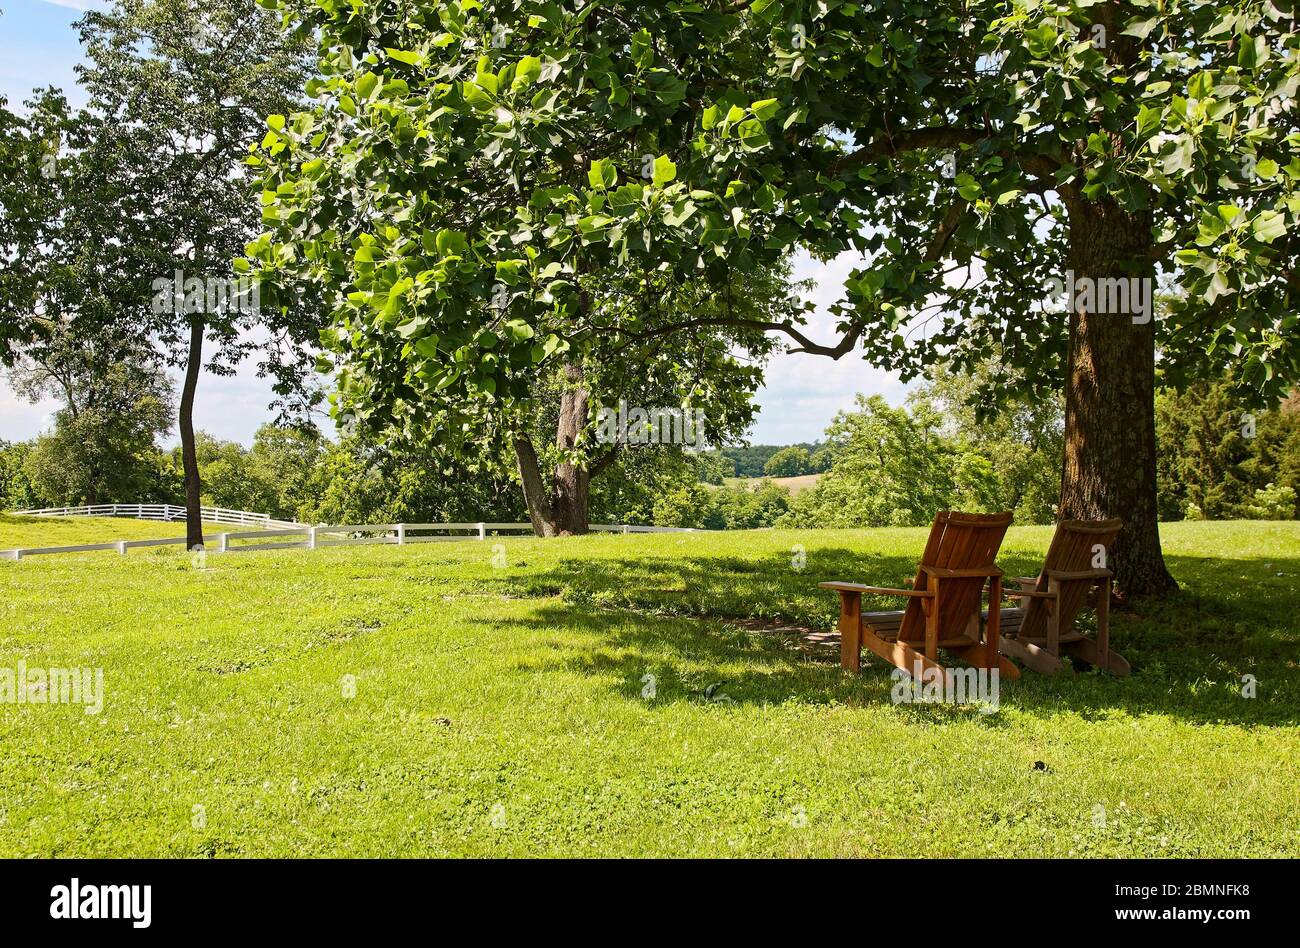 Scène paisible, herbe verte, arbres, clôtures blanches, deux chaises Adirondack, ombre d'arbre, Kentucky; printemps Banque D'Images